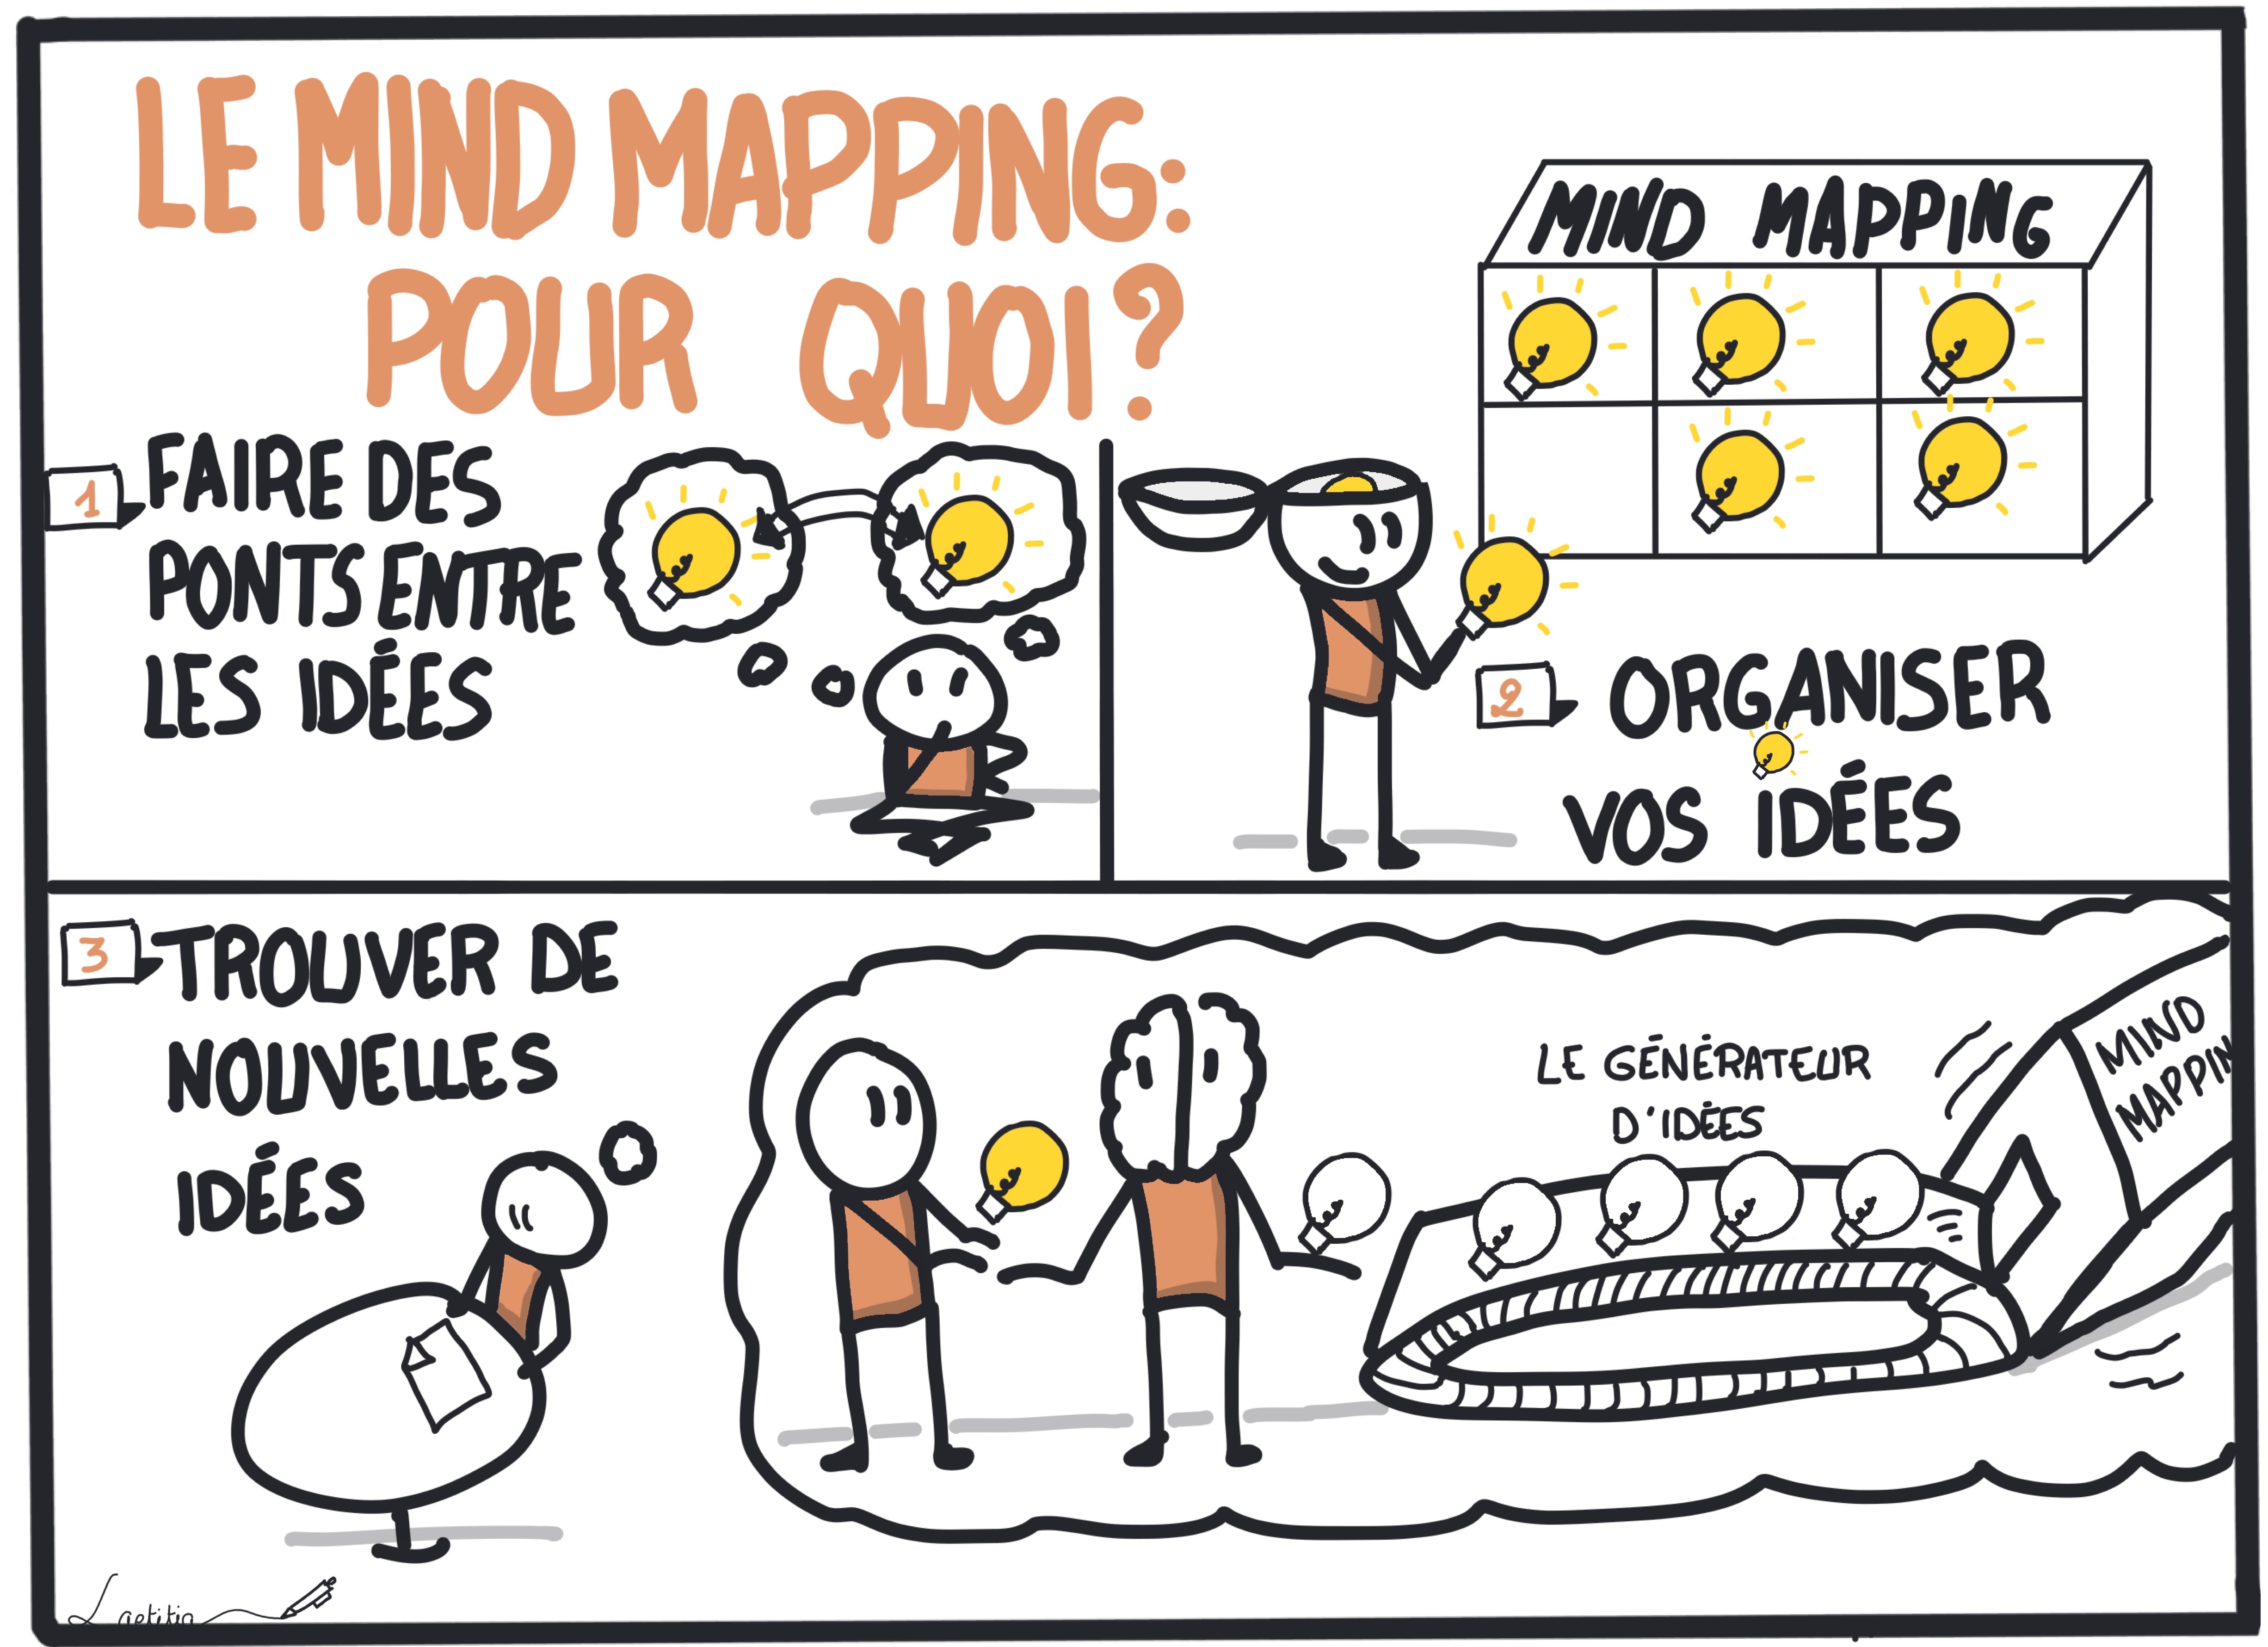 Le mind mapping : pour quoi ?